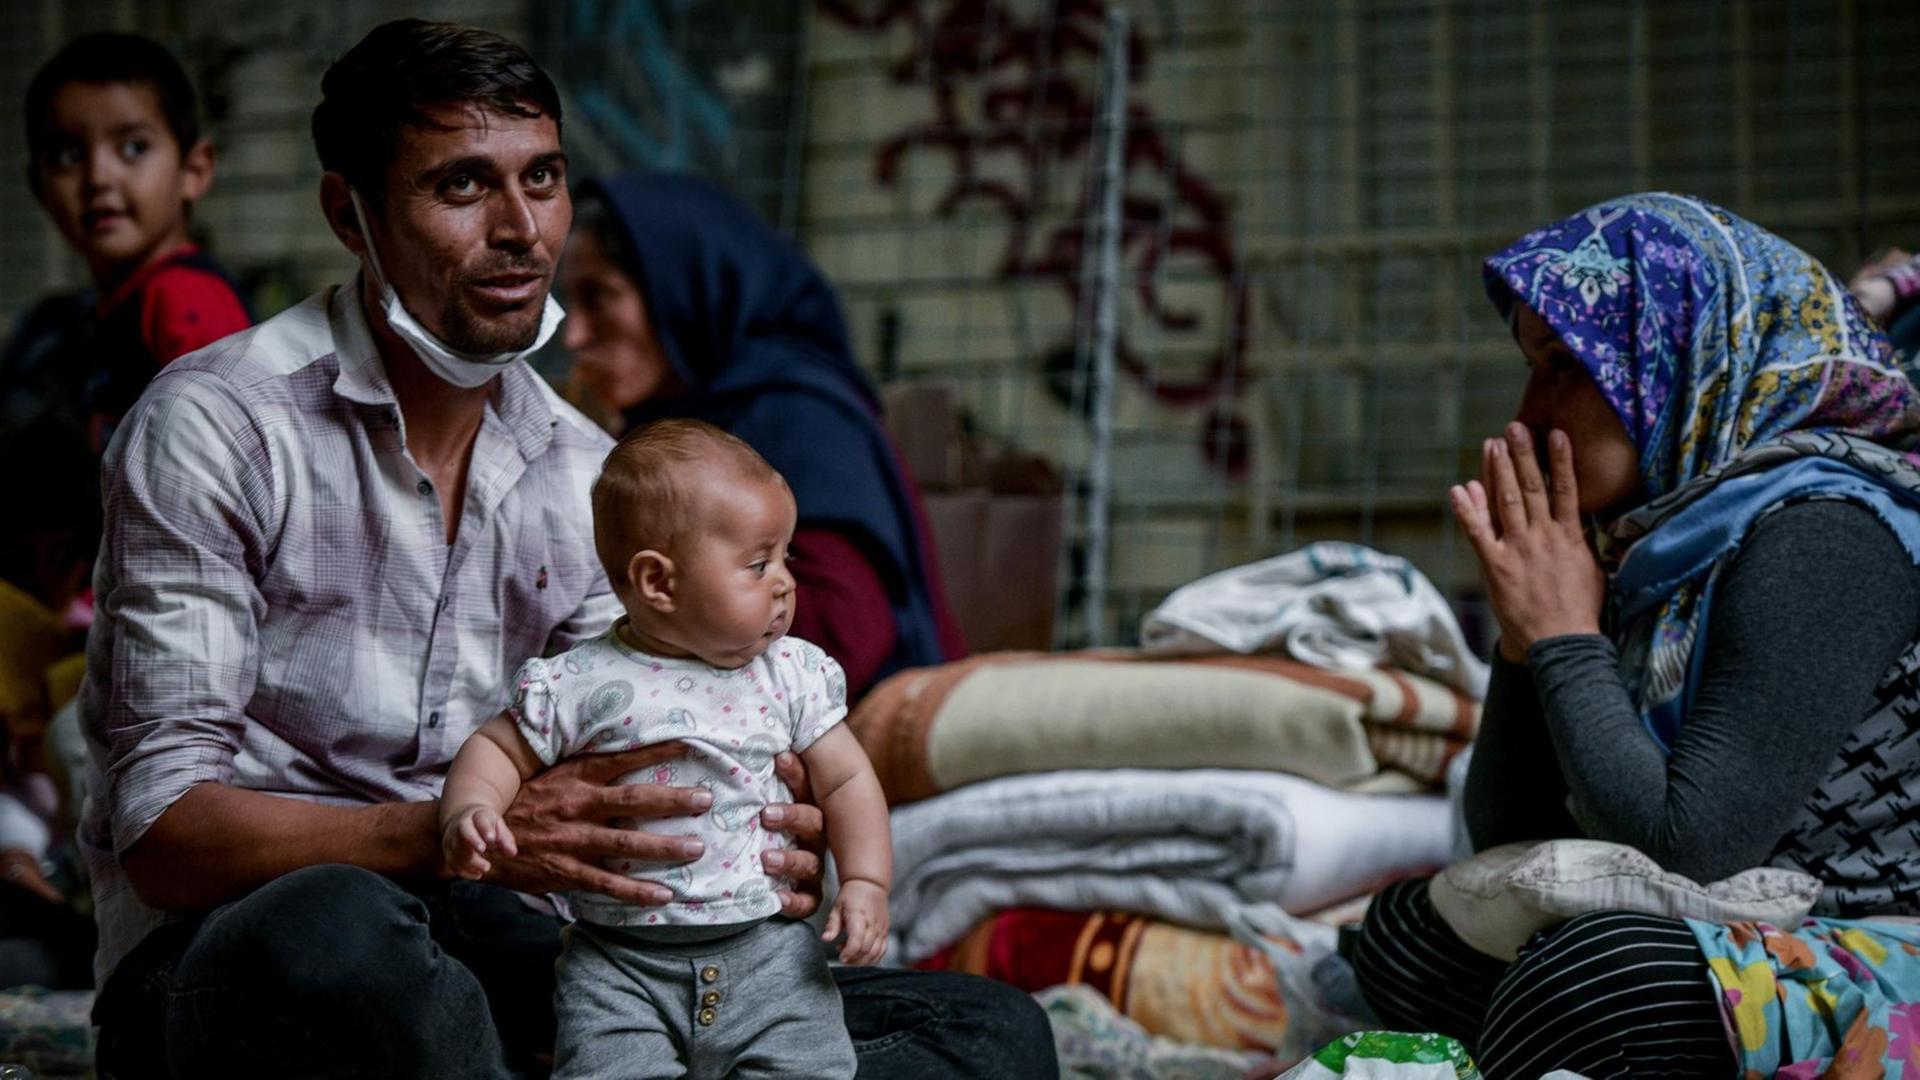 Eine Flüchtlingsfamilie, die jetzt auf der Straße campiert.